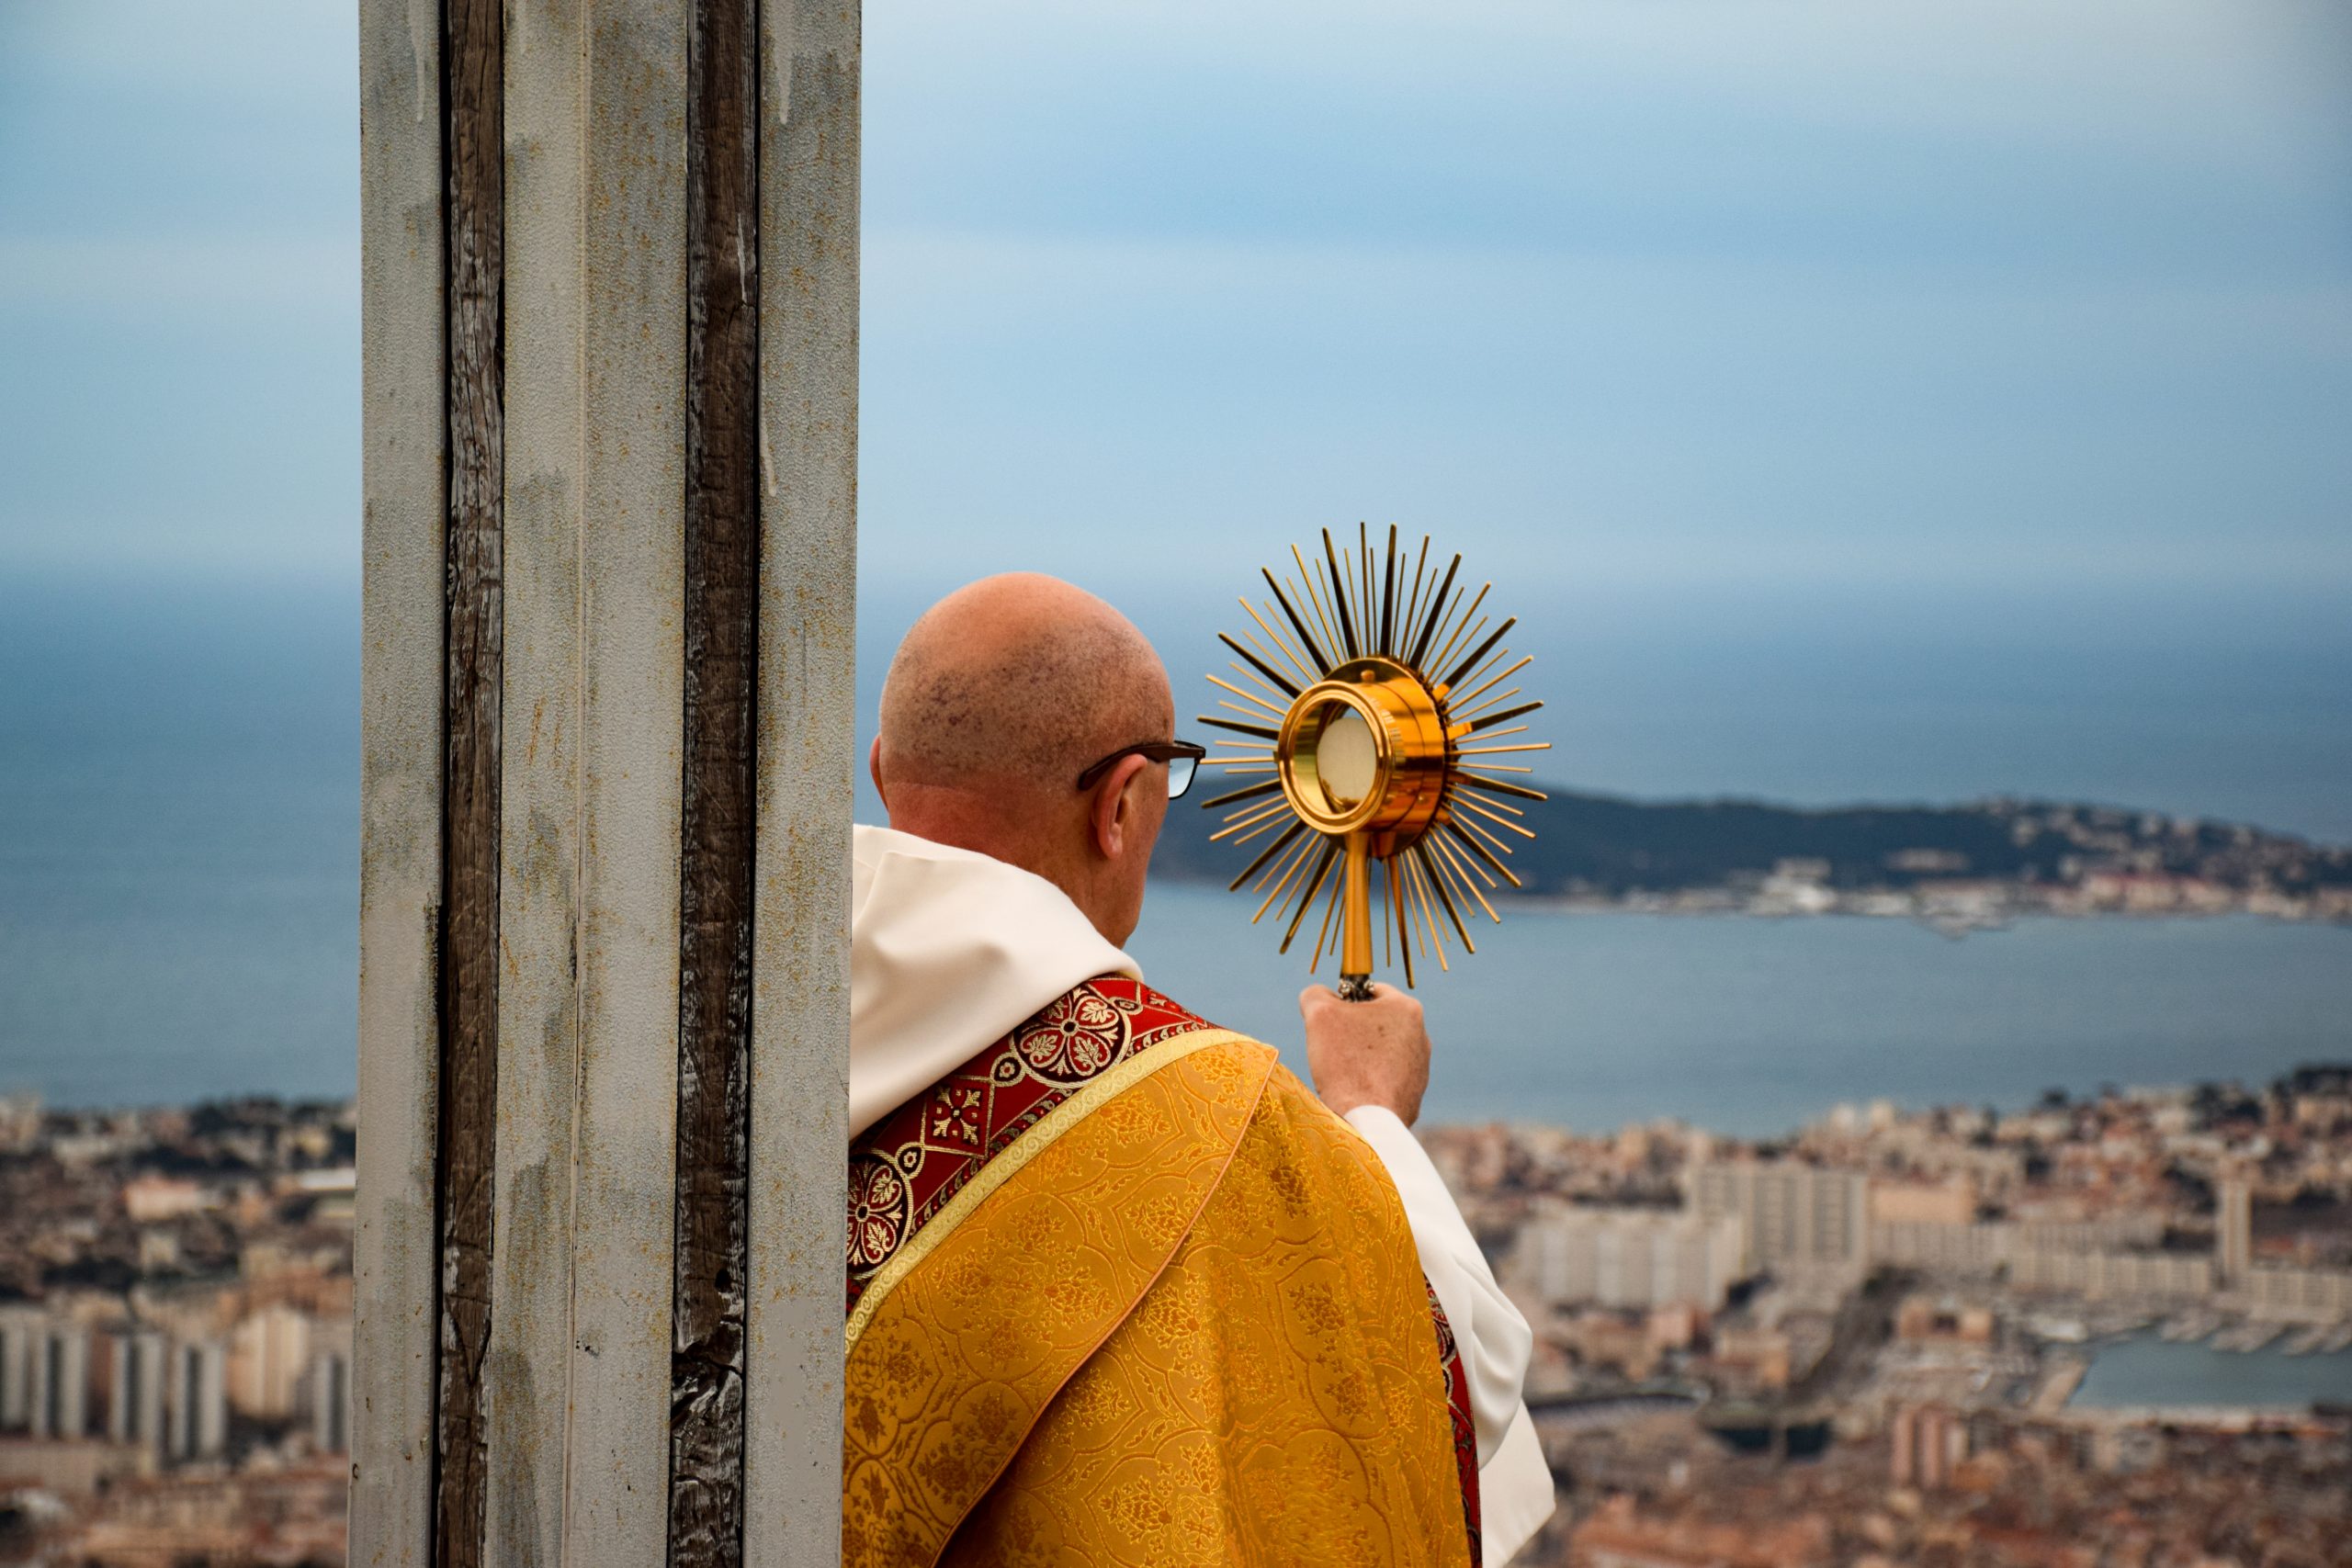 La bénédiction du Saint Sacrement à la Ville de Toulon, par Mgr Dominique Rey, le 17 mars 2020 (Photos) Monsiegneur-saint-sacrement-toulon7-scaled